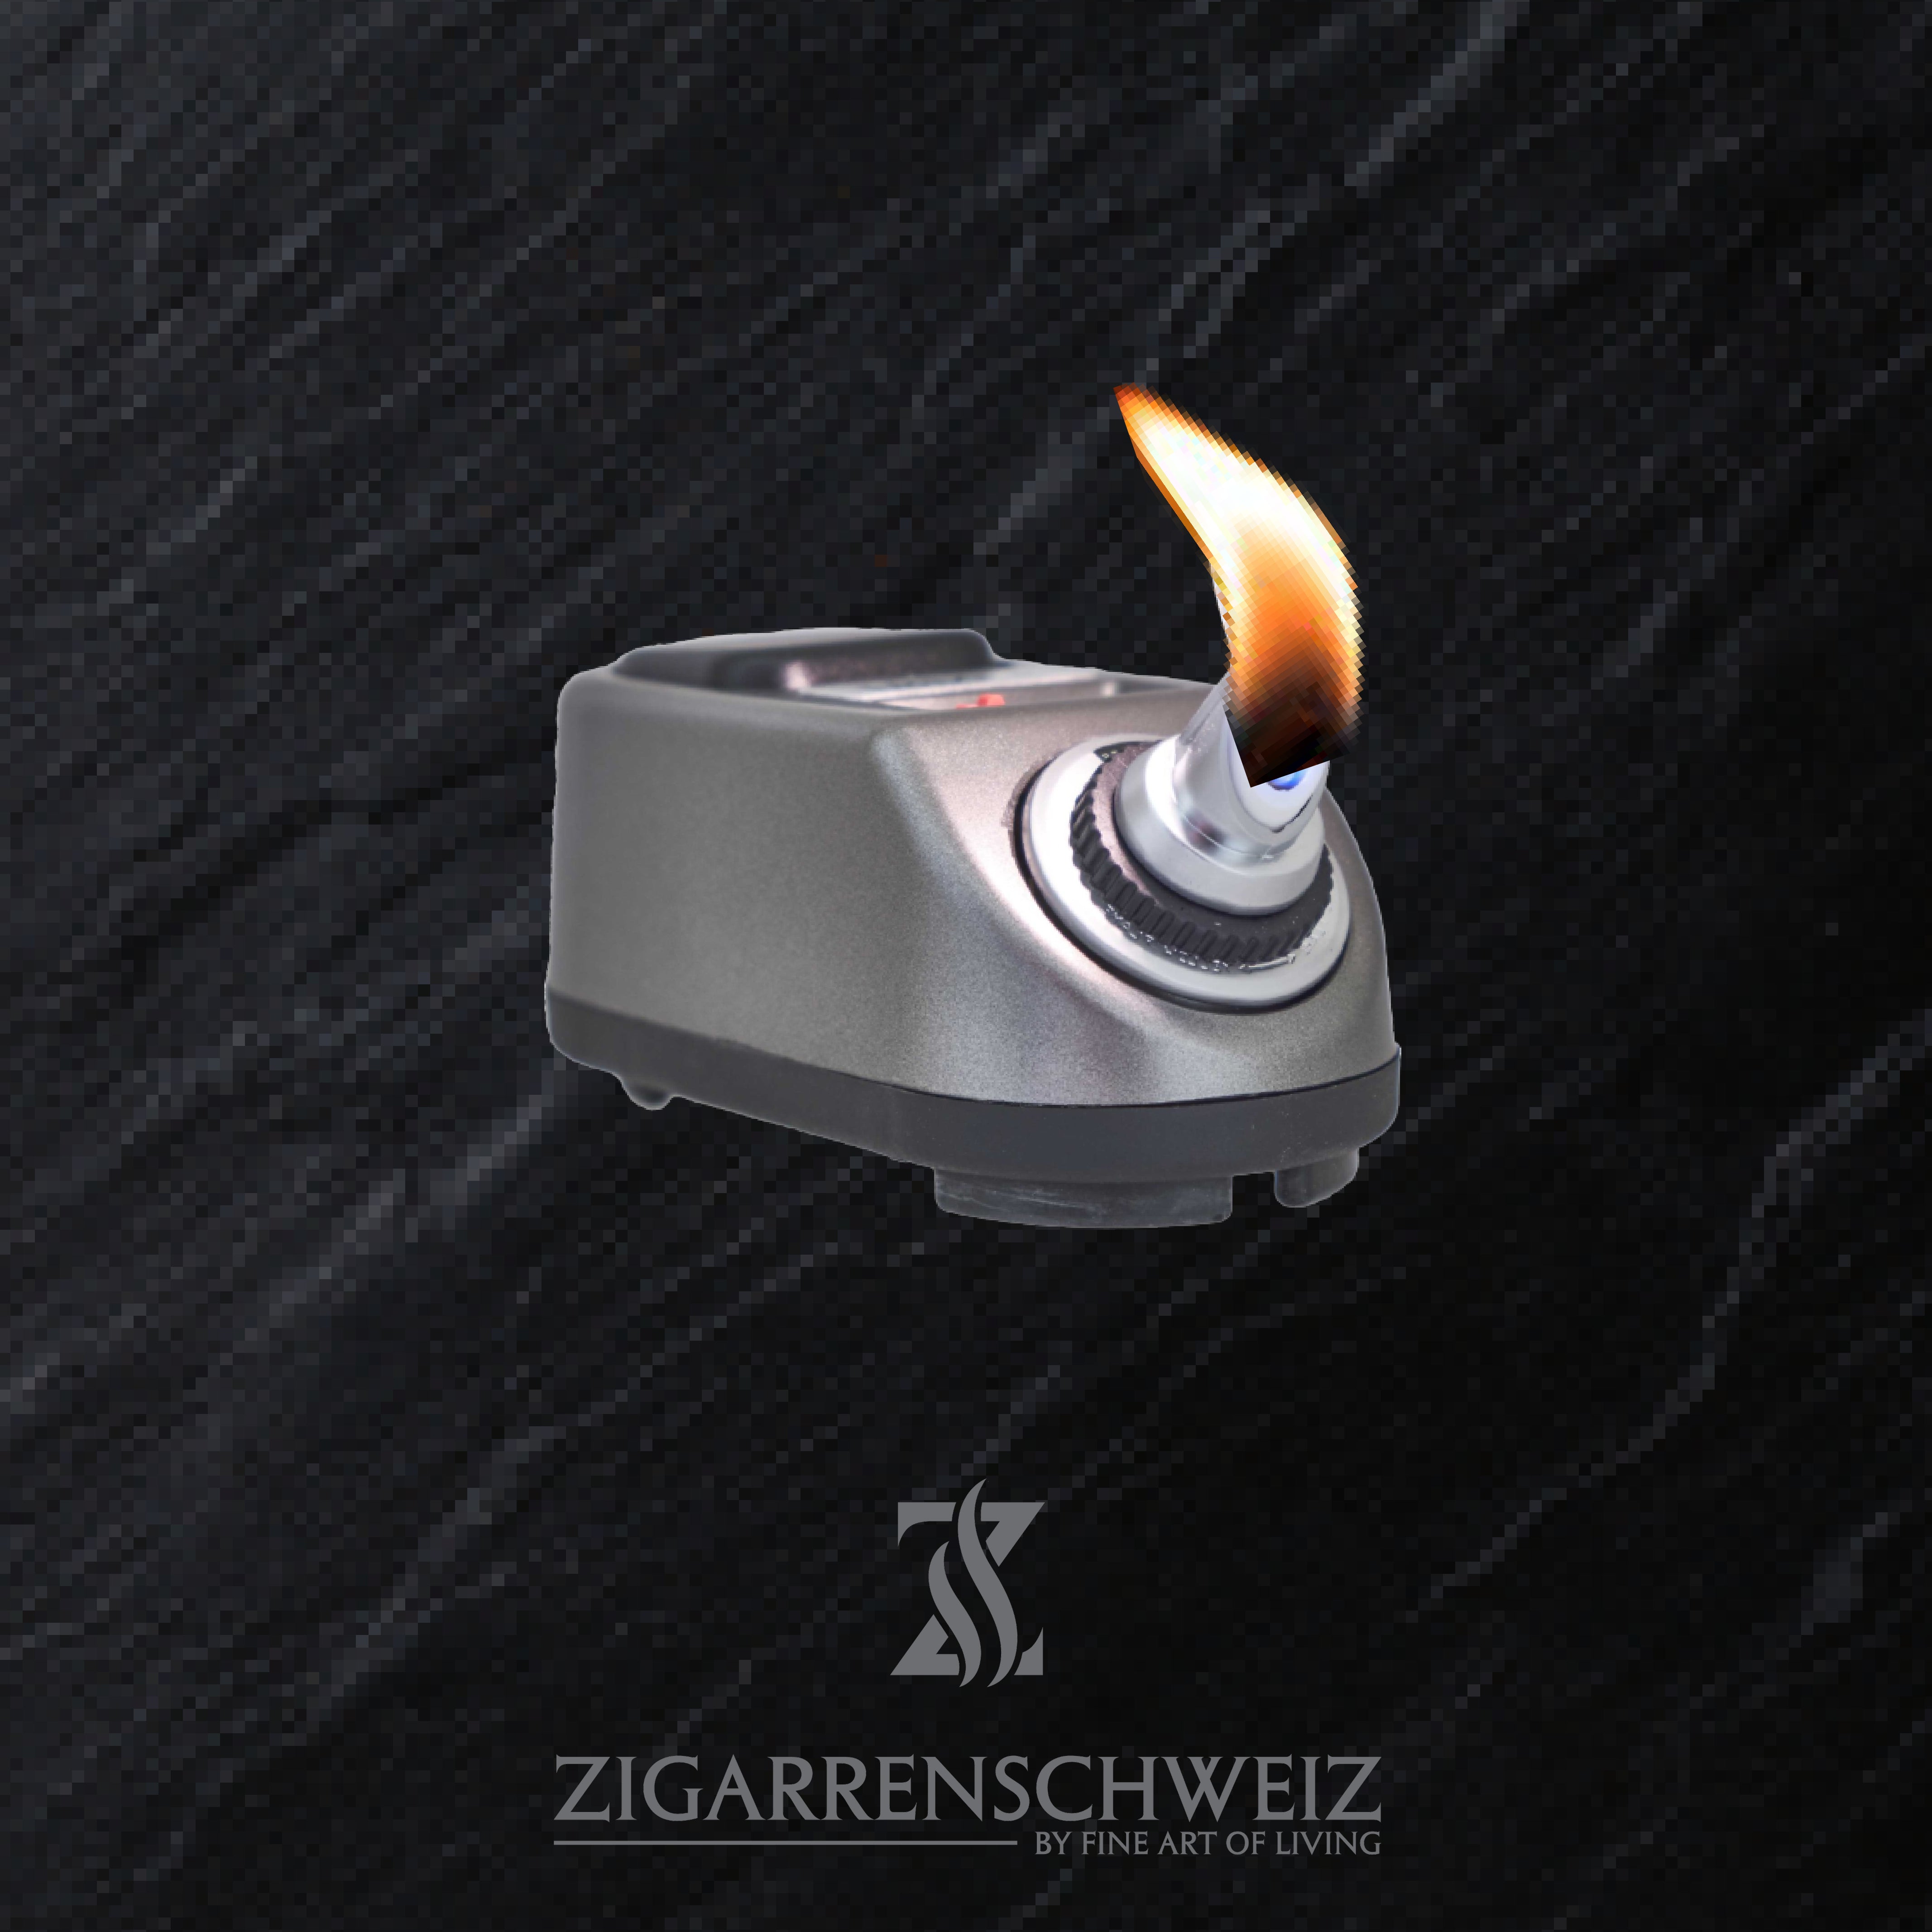 Prince K-1000 Tischfeuerzeug für Zigarren Soft Flame Flamme